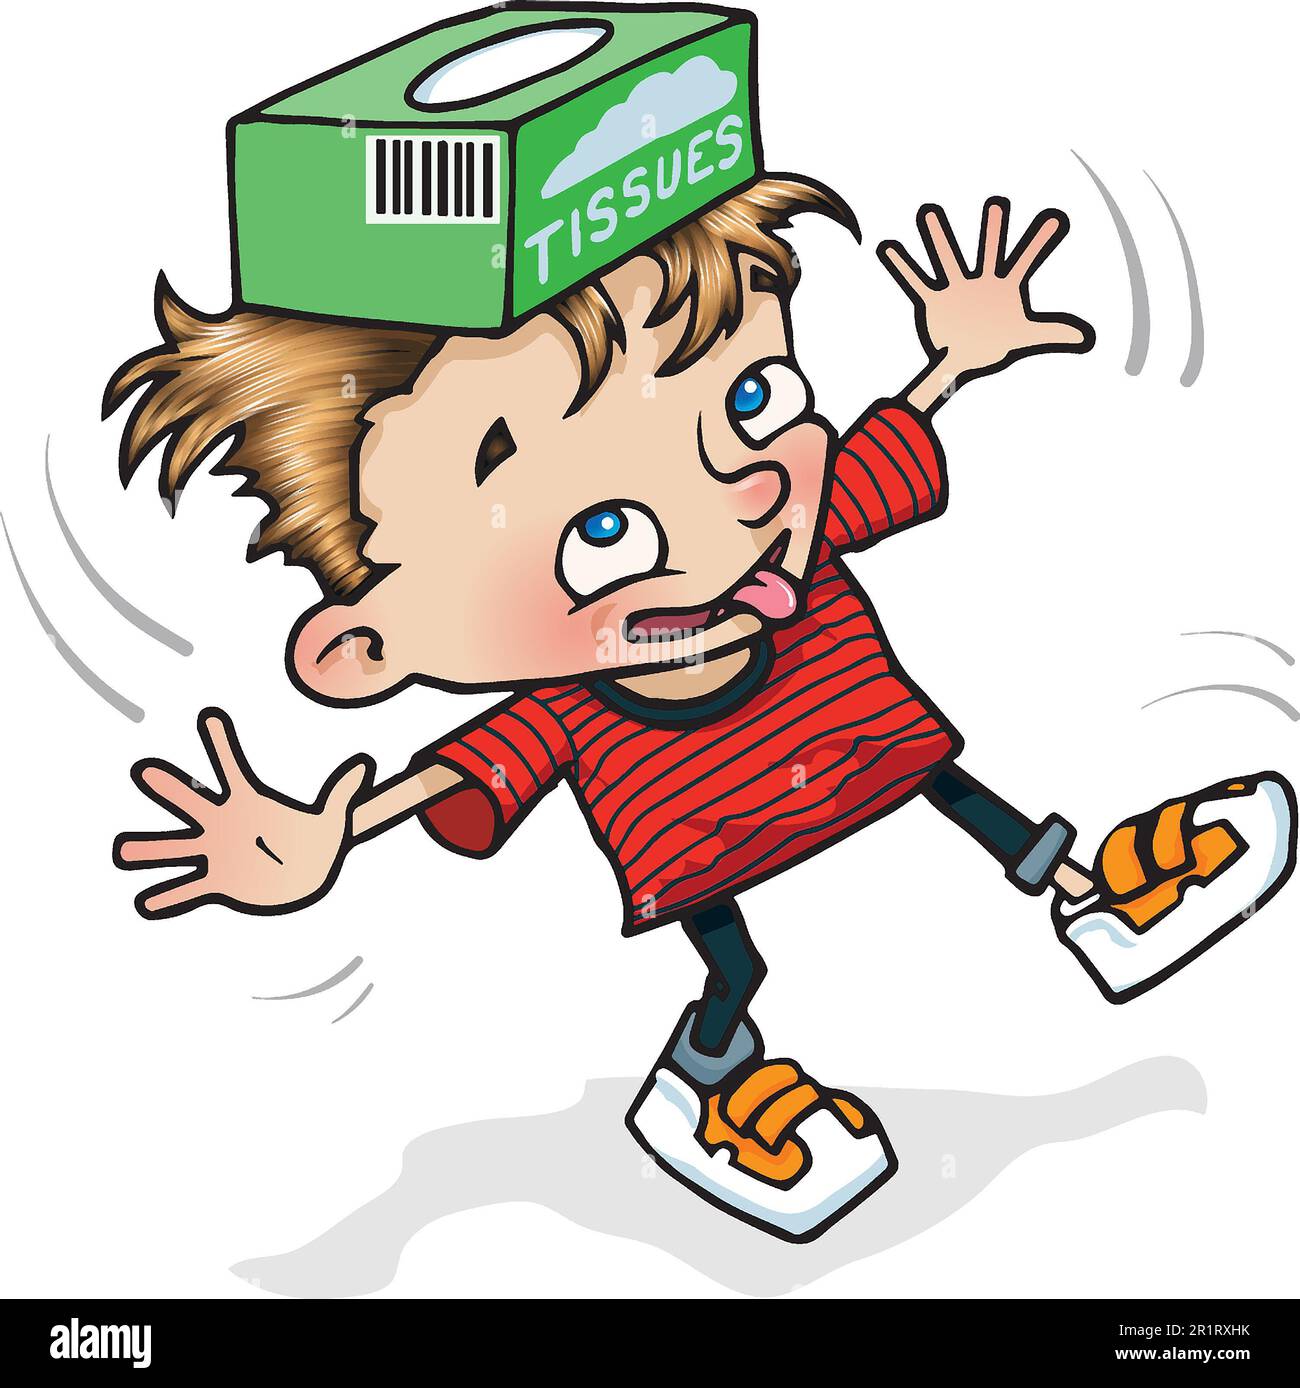 Art Cartoon-Illustration eines jungen Jungen im Alter von 5 bis 7 Jahren, balanciert eine Kiste auf seinem Kopf, lernt durch Spiel, Bewegung, Beweglichkeit, Koordination, Karosseriesteuerung. Stockfoto